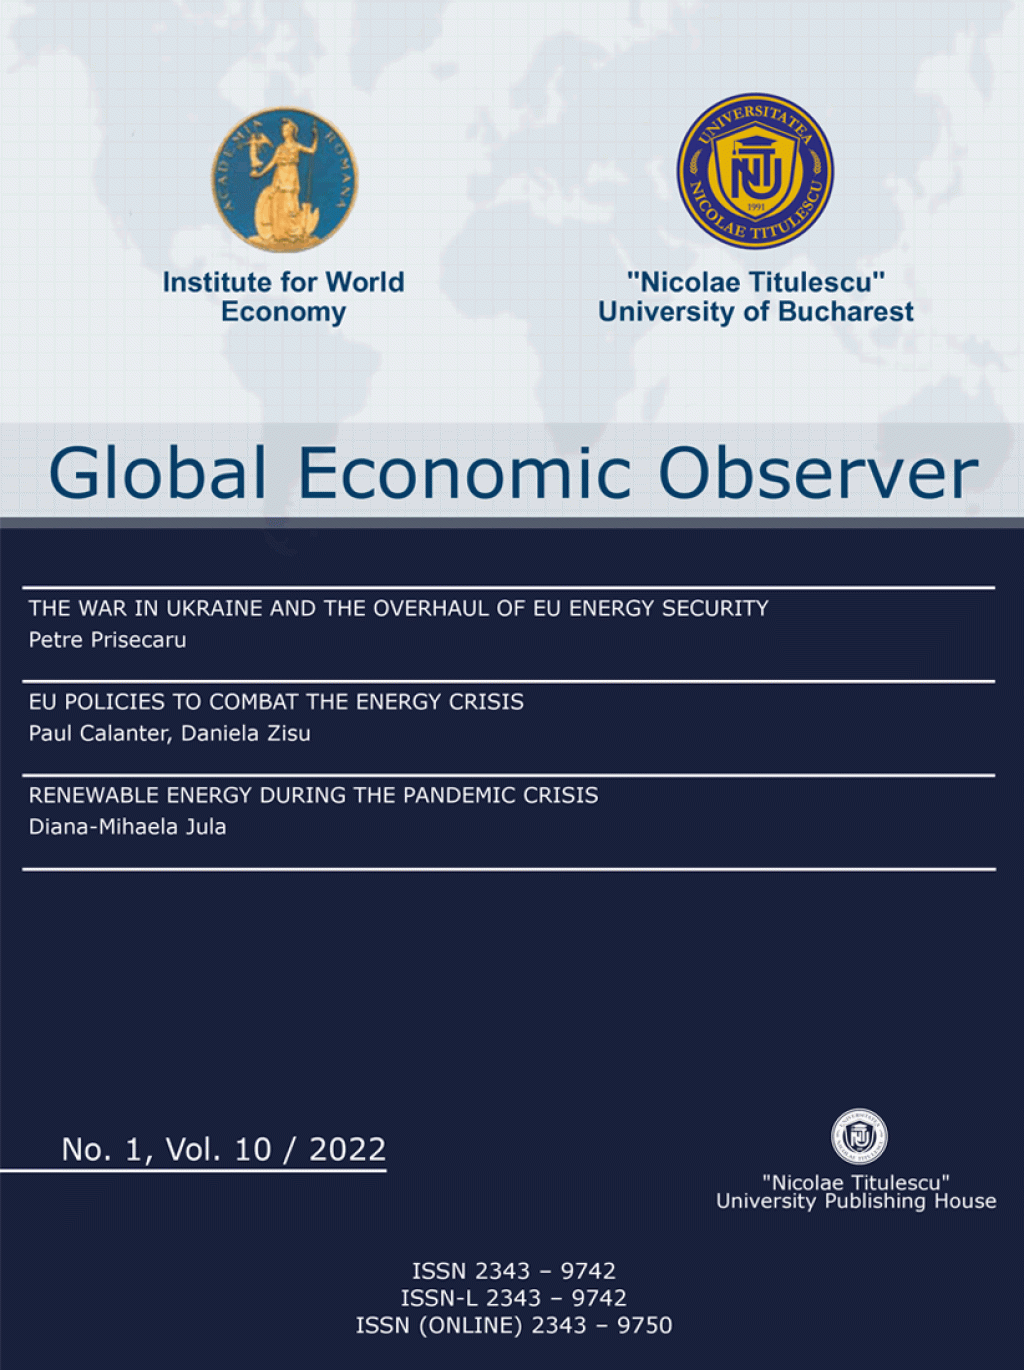 GlobalEconomicObserver